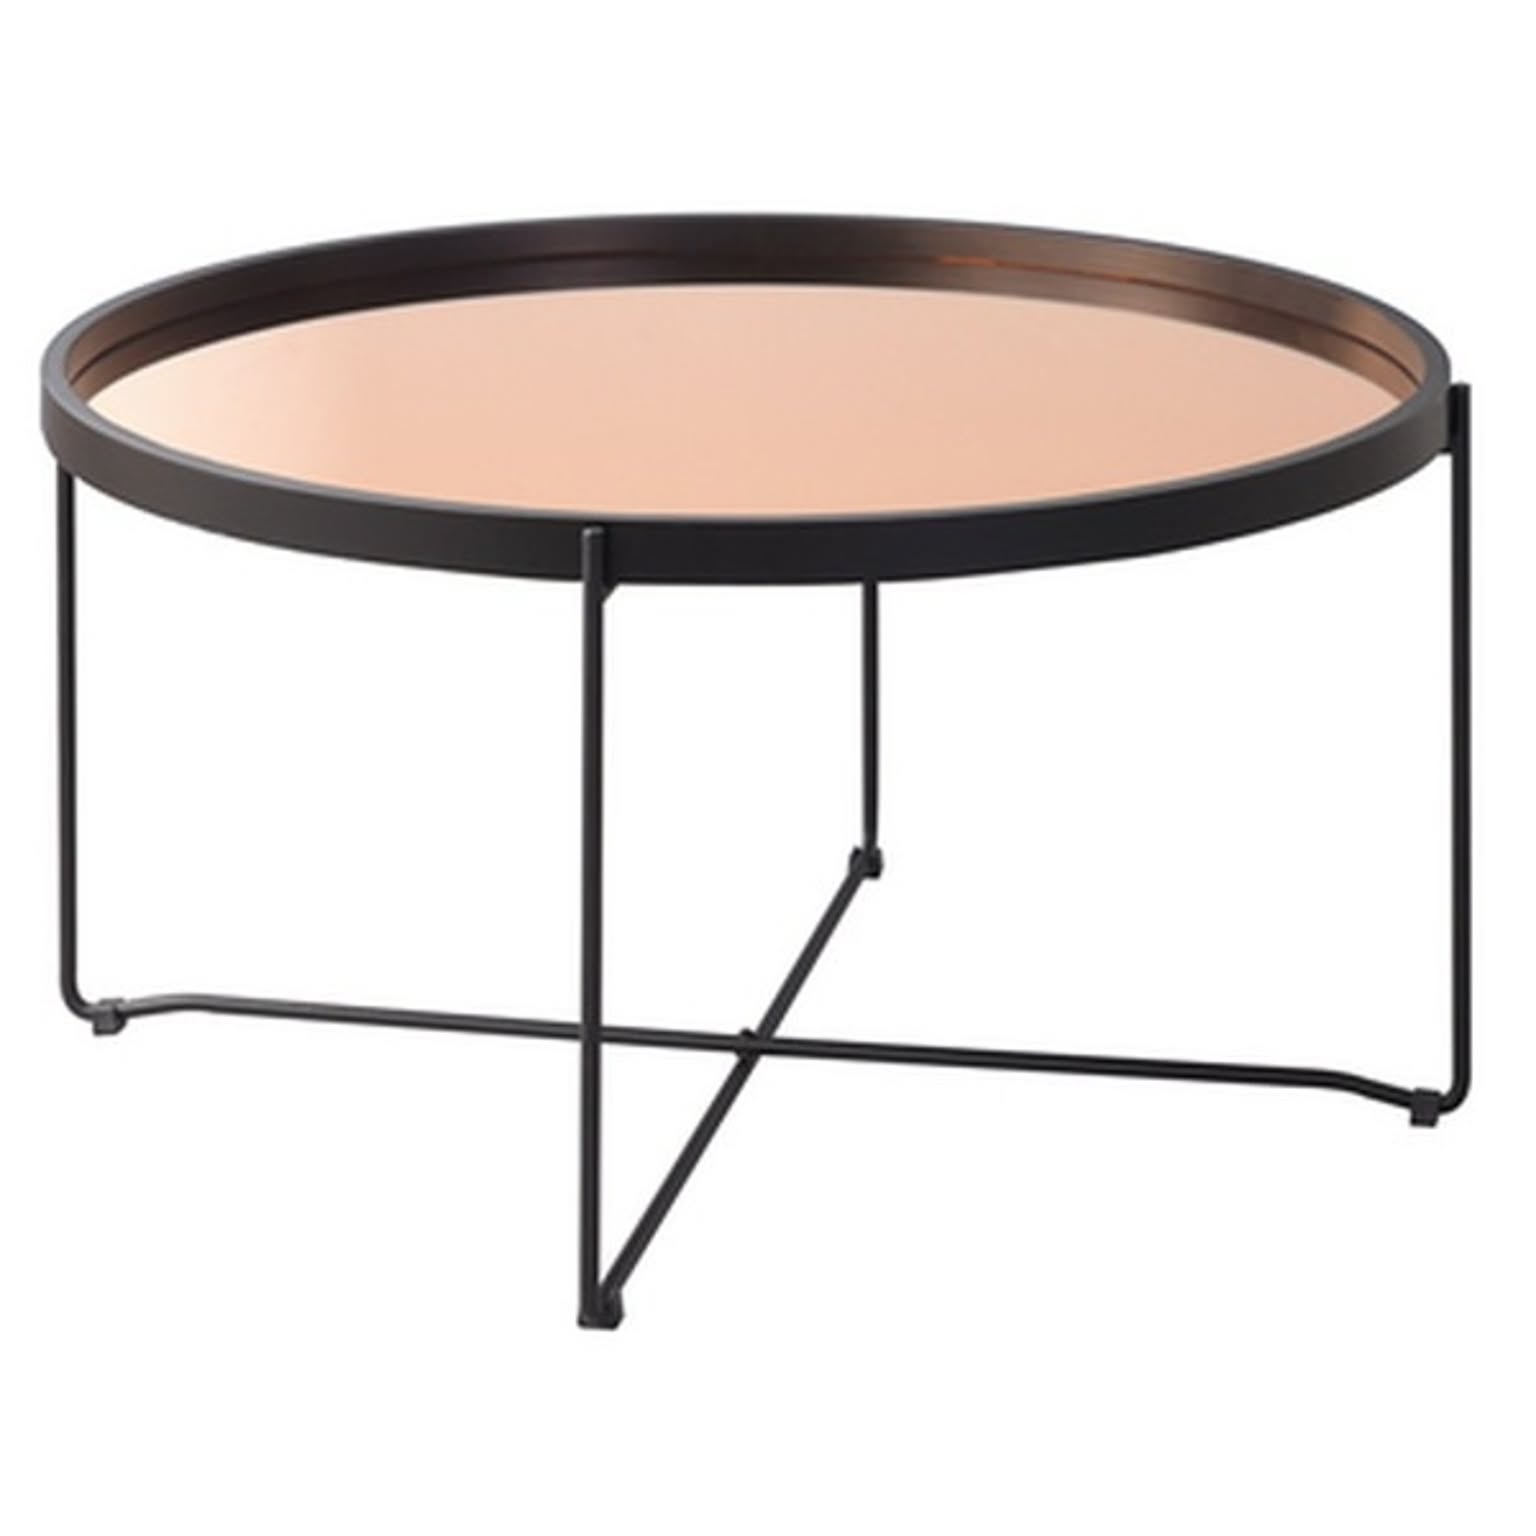 サイドテーブル ミニテーブル 約幅73cm L ミラー天板 円形 ラウンド トレーテーブル リビング ダイニング インテリア家具